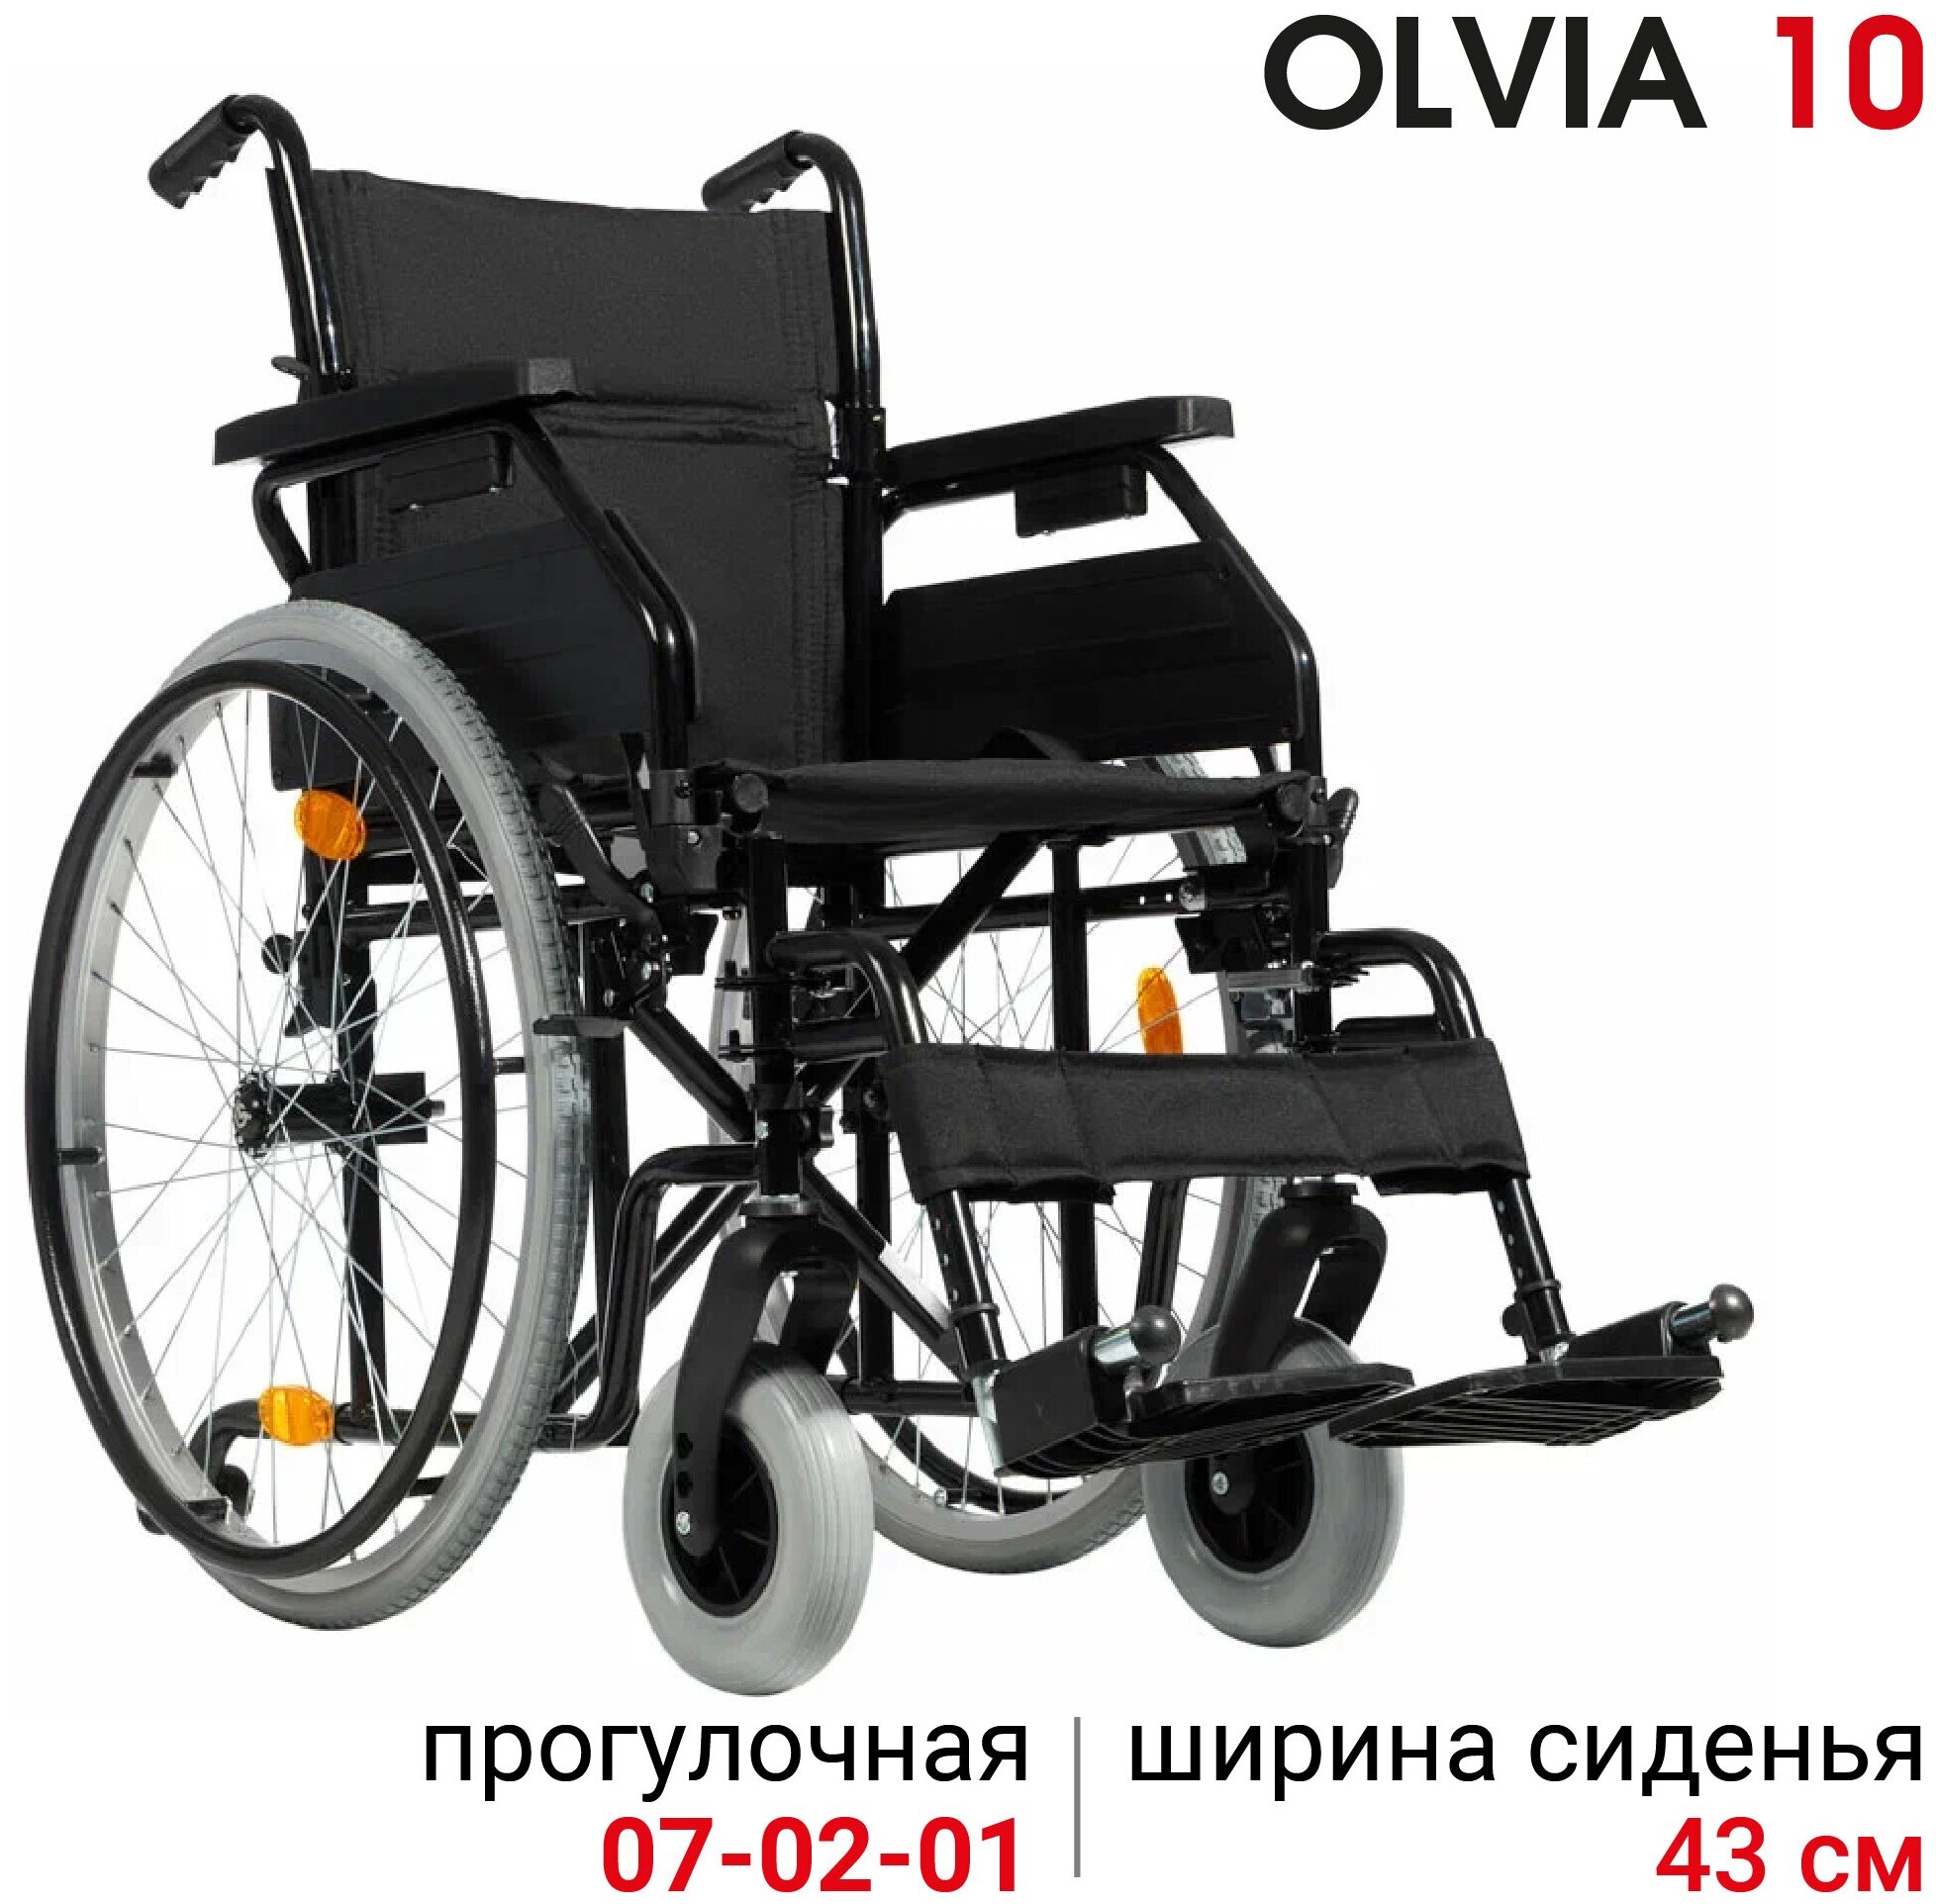 Кресло-коляска Ortonica Olvia 10 ширина сиденья 43 см литые колеса